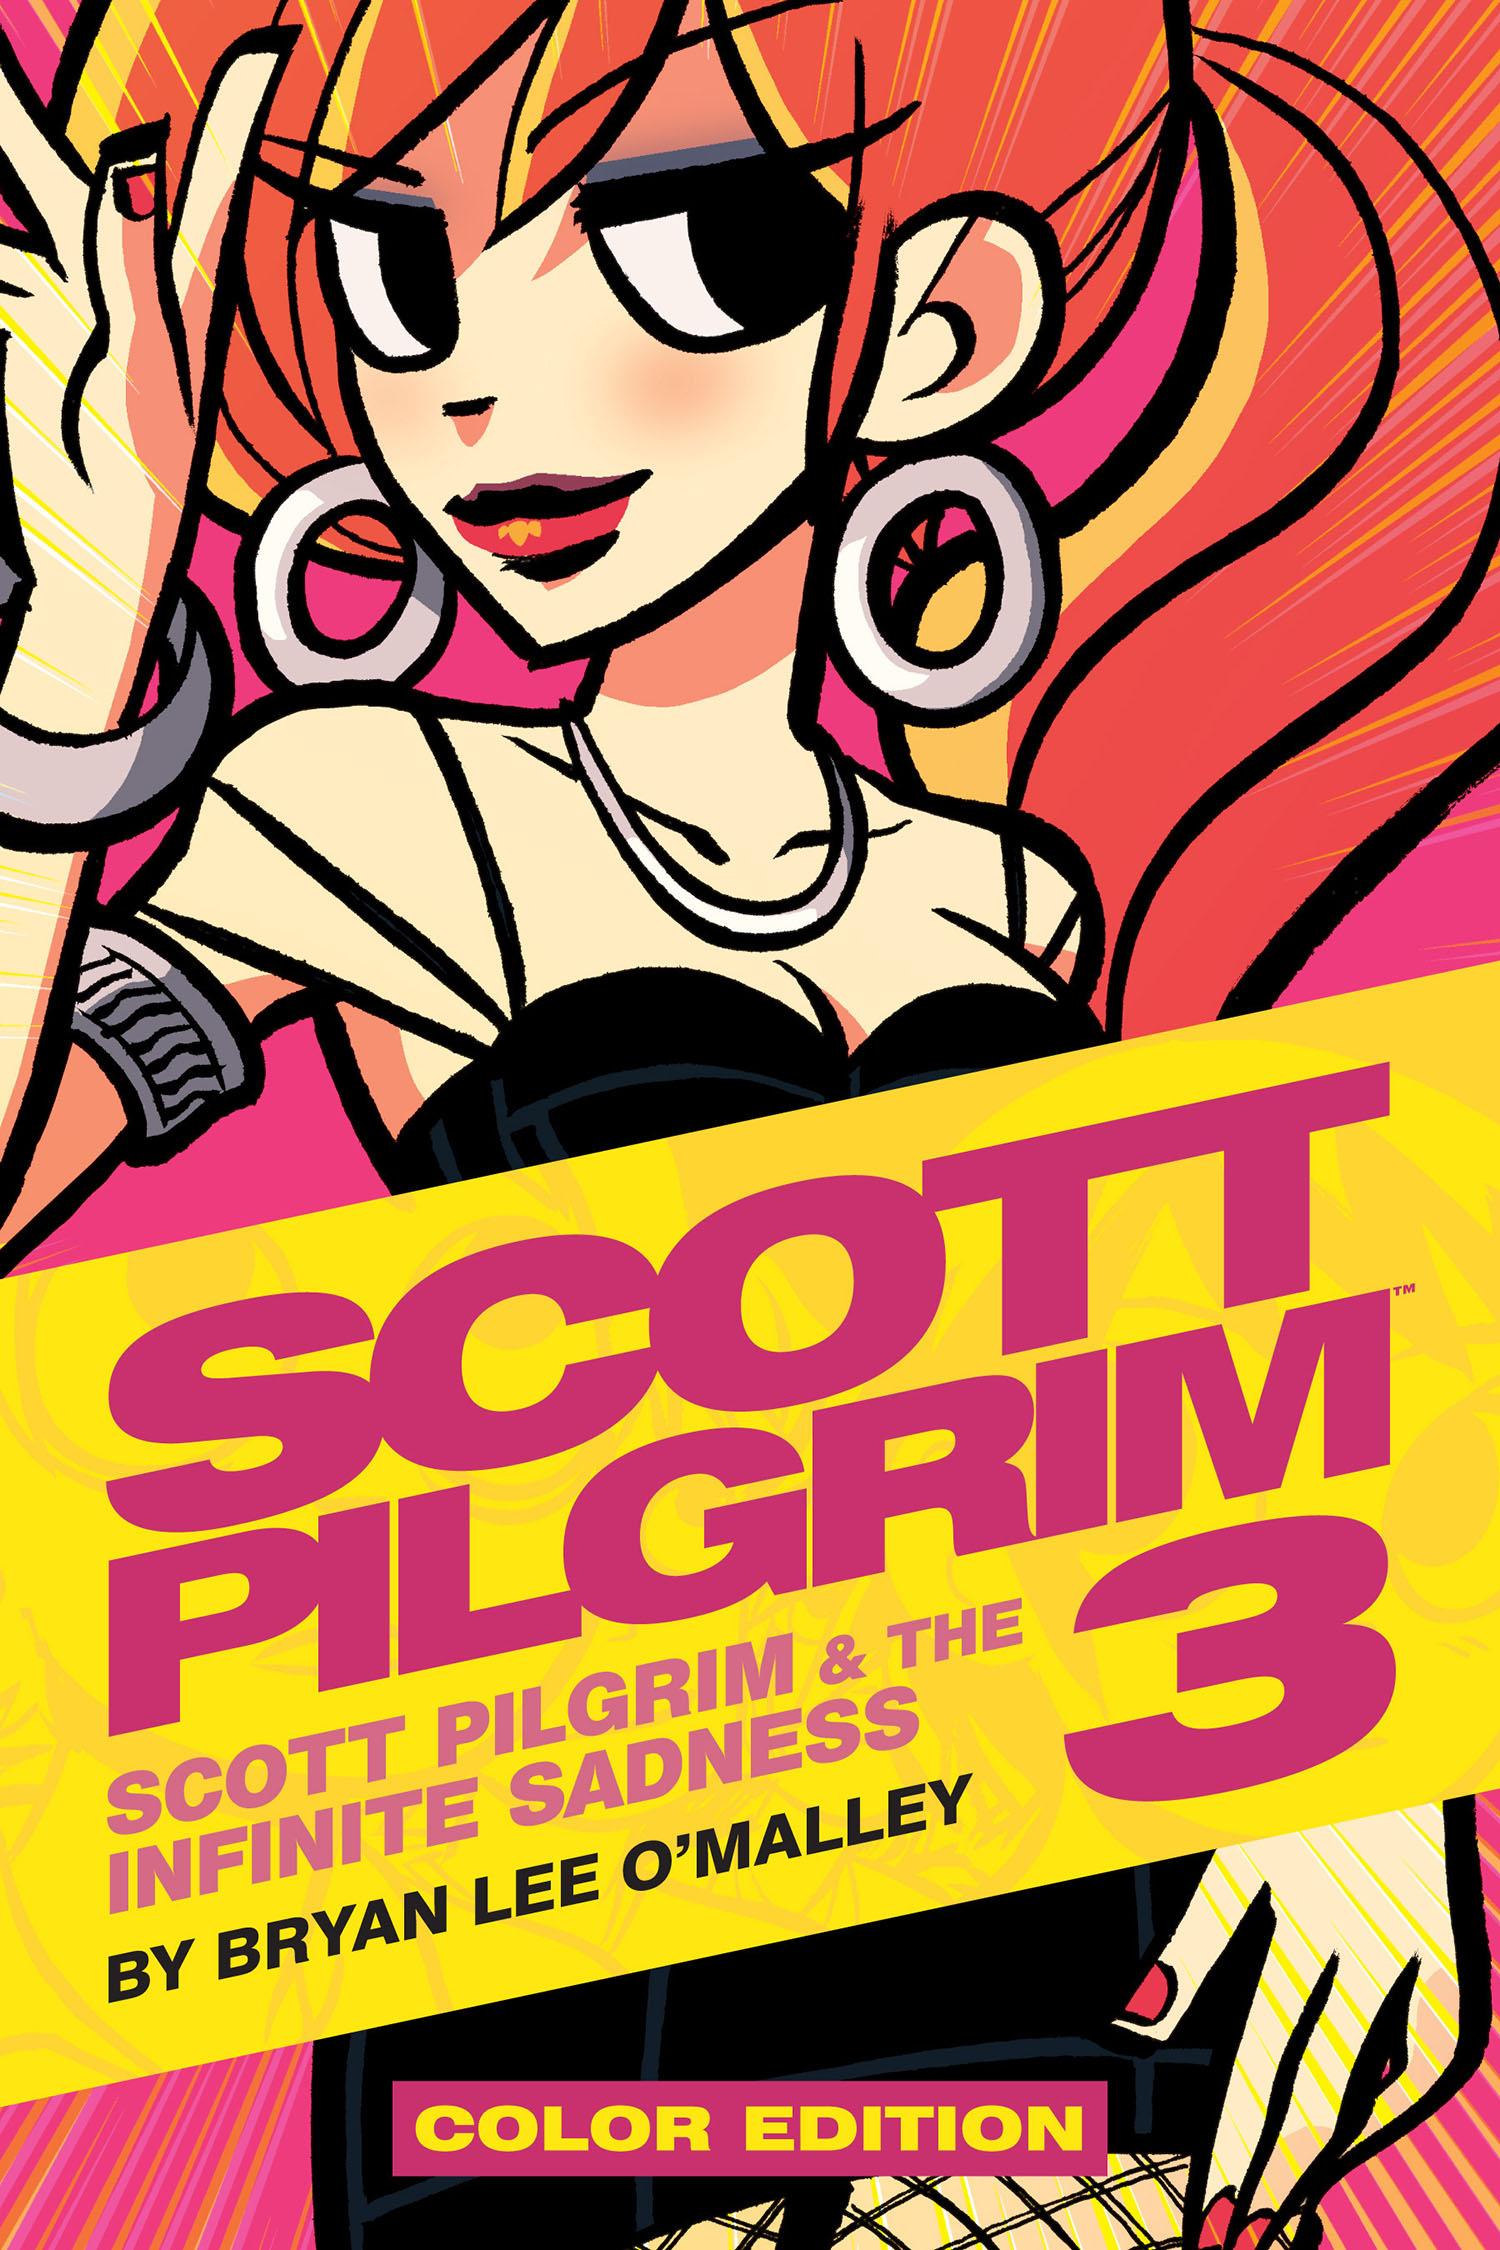 Брайан ли скотт пилигрим. Скотт Пилигрим книга. Скотт Пилигрим 3 том Злое издание. Брайан о Мэлли Скотт Пилигрим. Энви Адамс Скотт Пилигрим комикс.